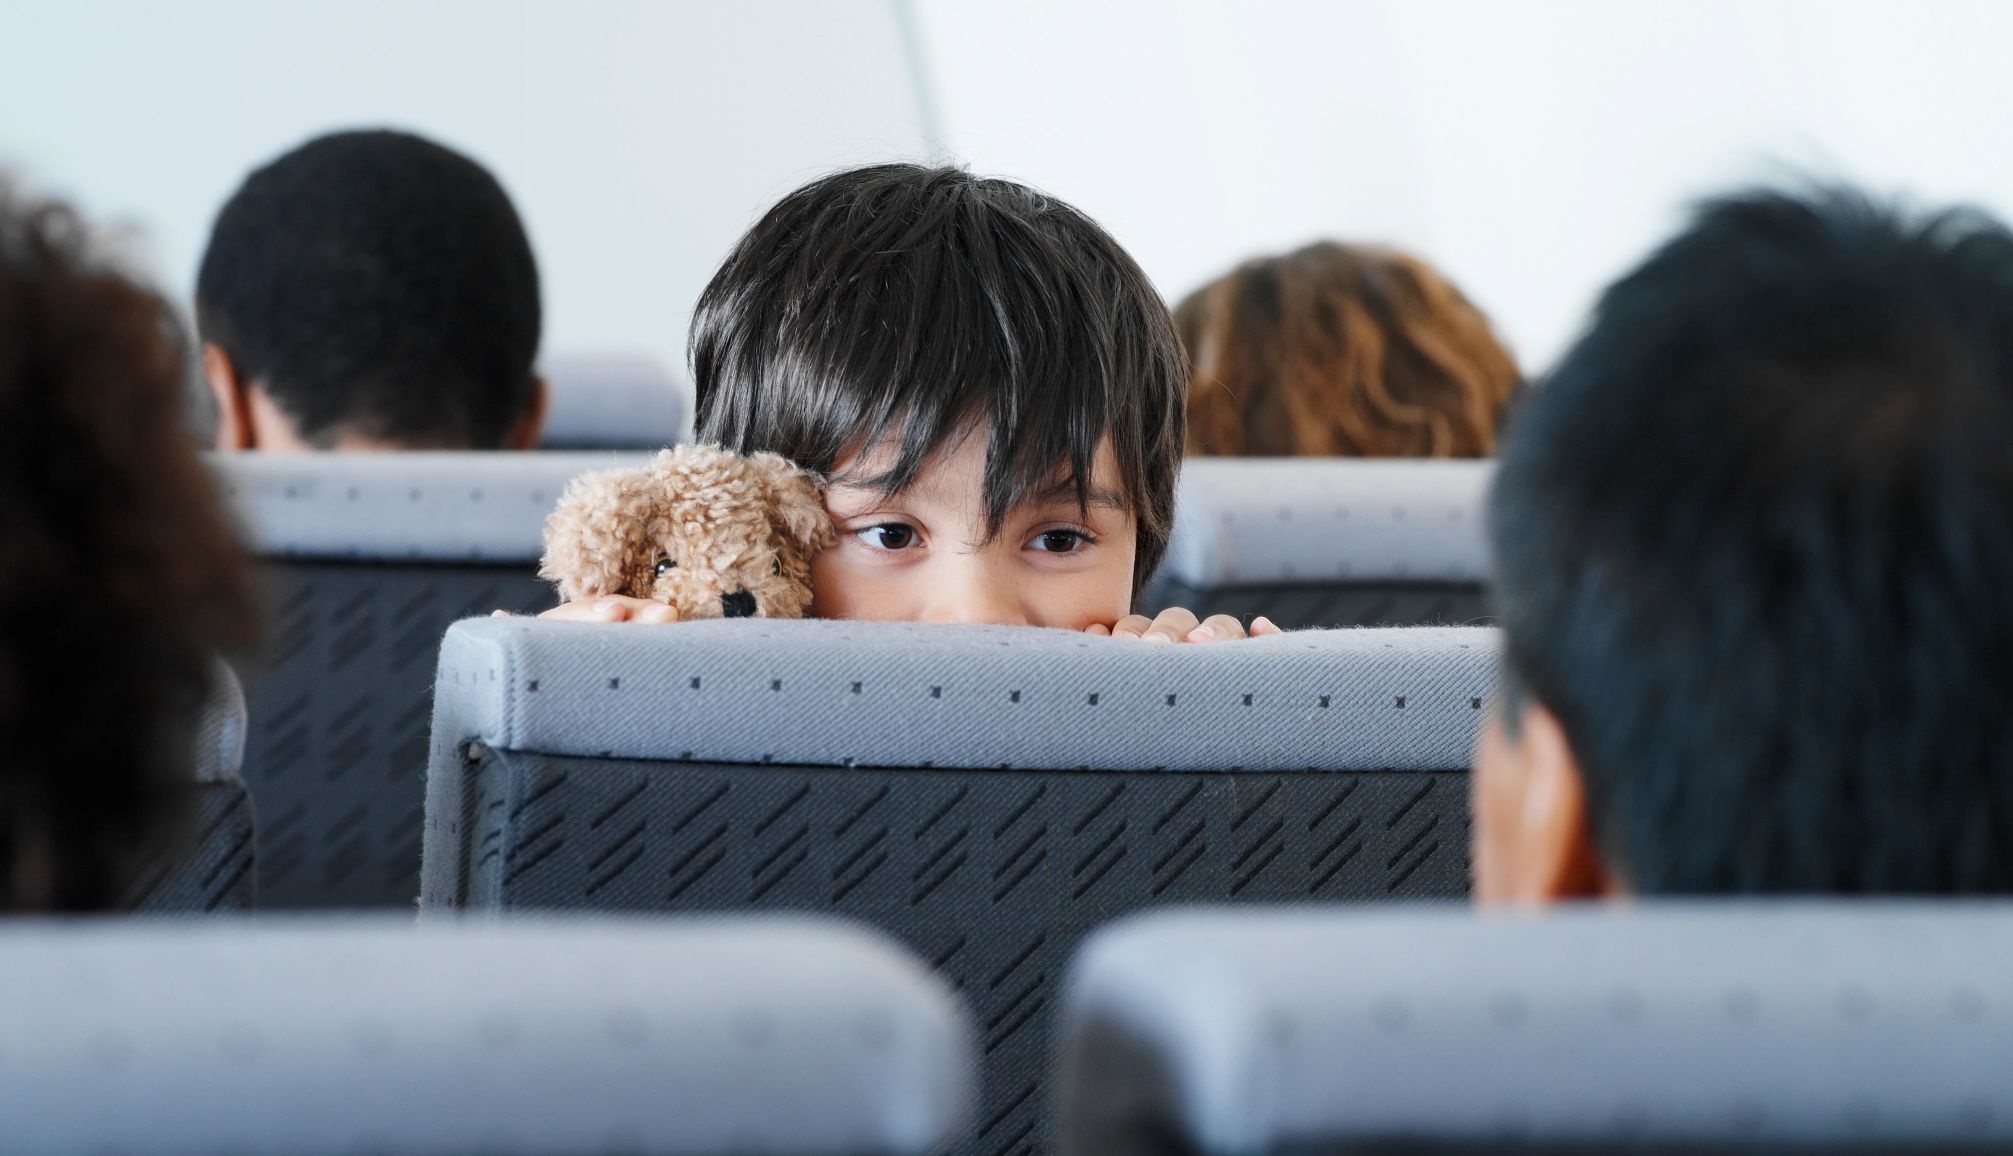 niño pequeño mirando por encima del respaldo de un asiento de avión